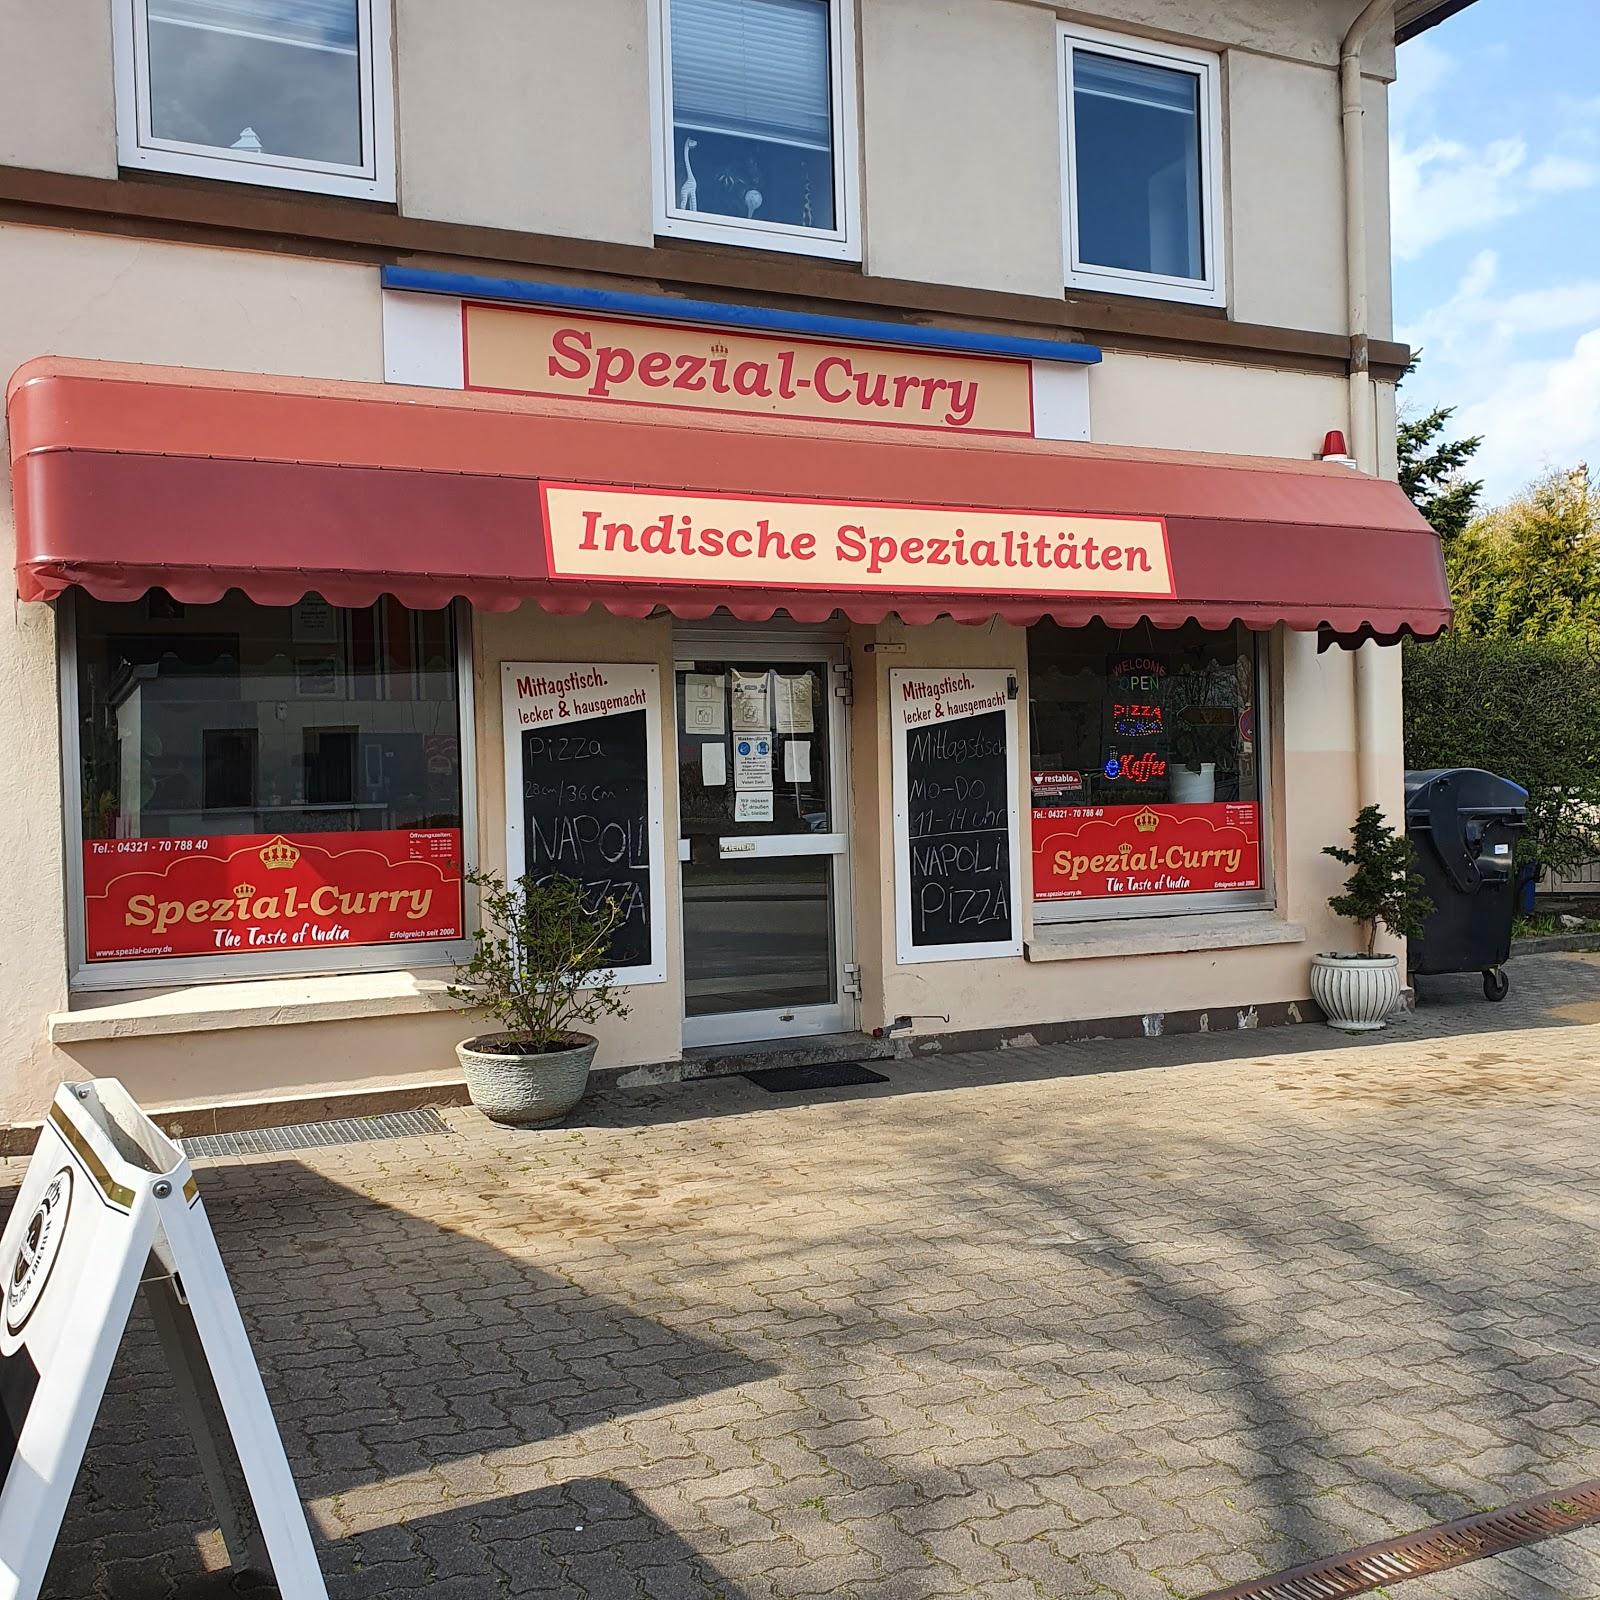 Restaurant "Spezial-Curry" in Neumünster